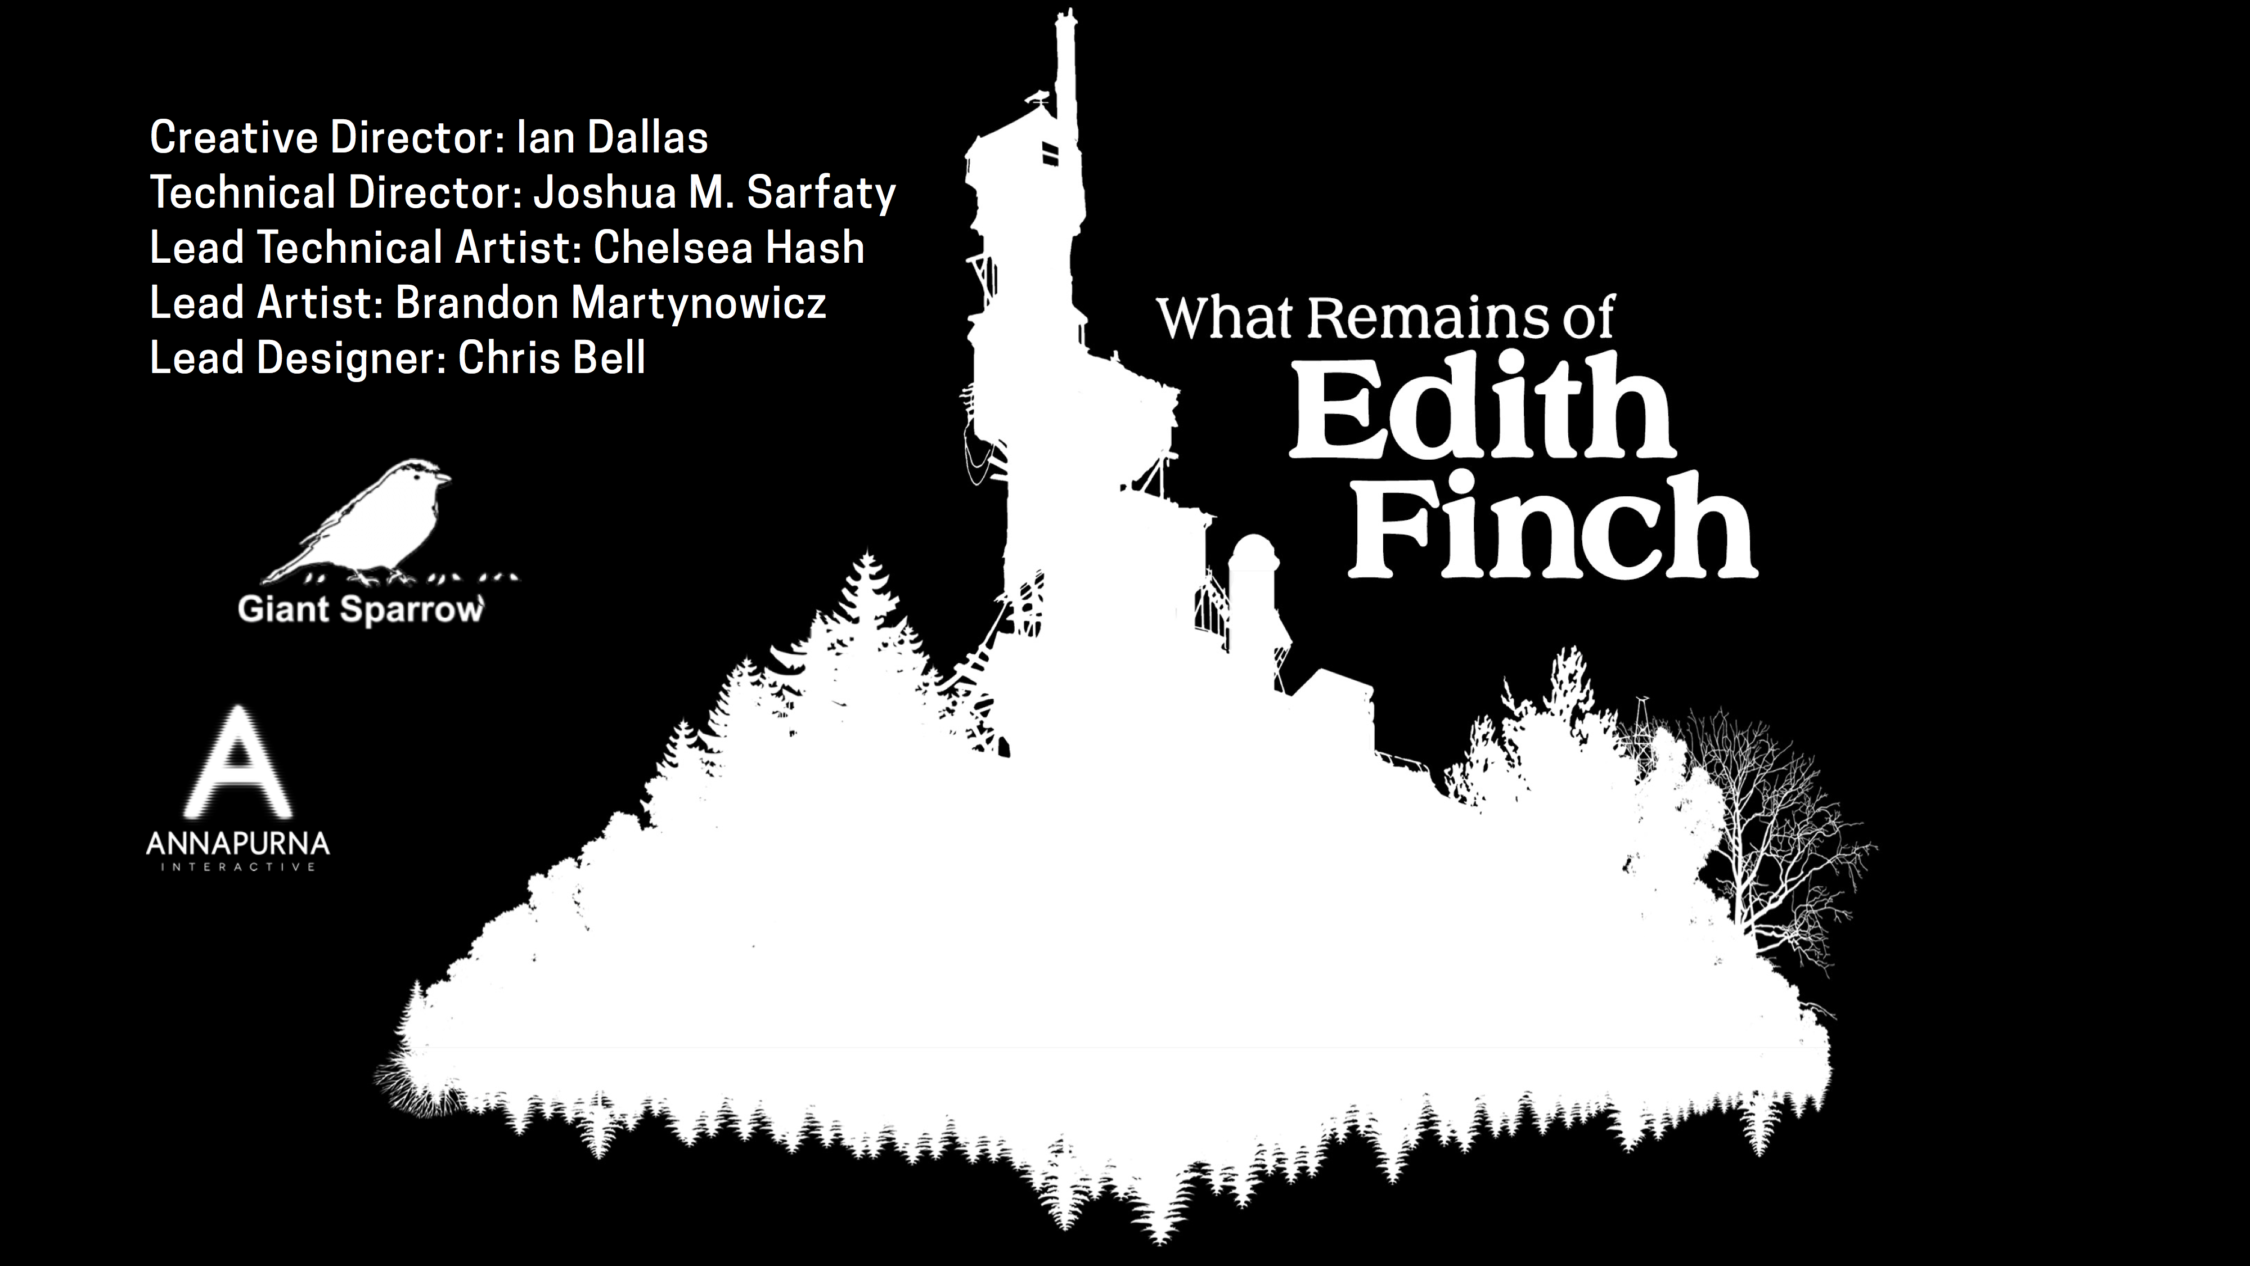 Edith Finch credits